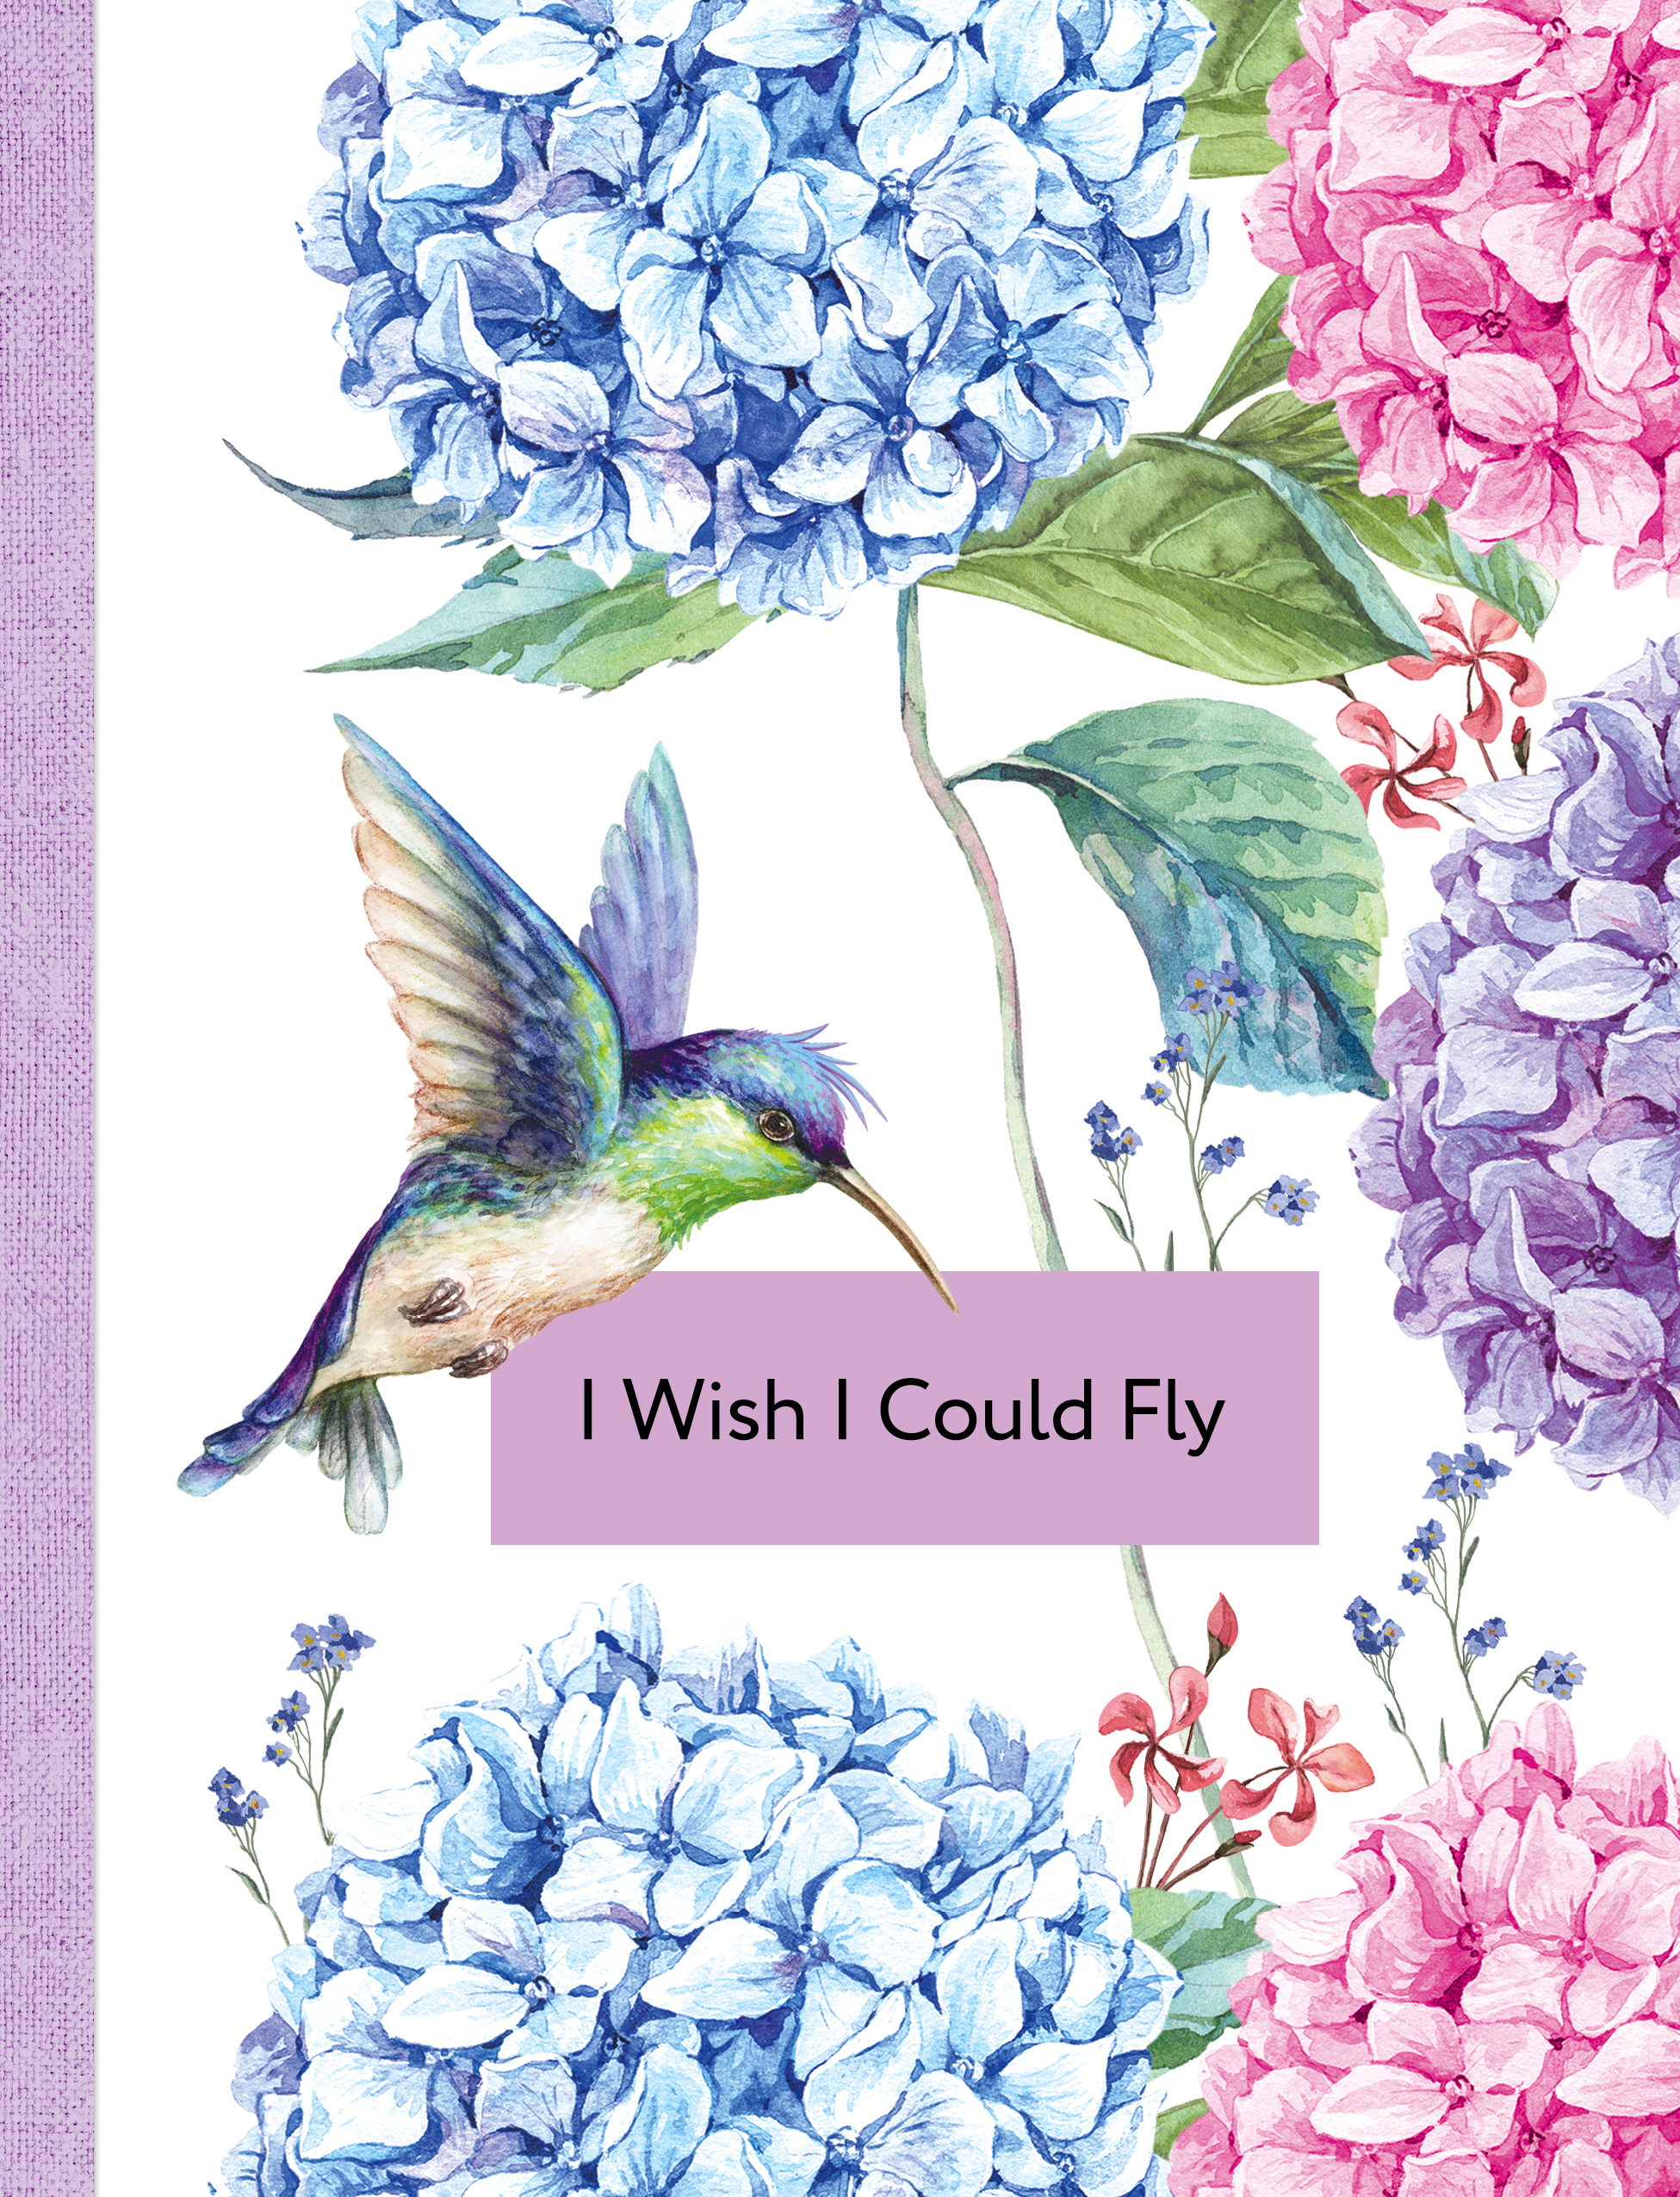 Fly как переводится на русский. Блокнот i Wish i could Fly. I Wish i could Fly. Wish i could Fly. I Wish i could Fly блокнот купить.